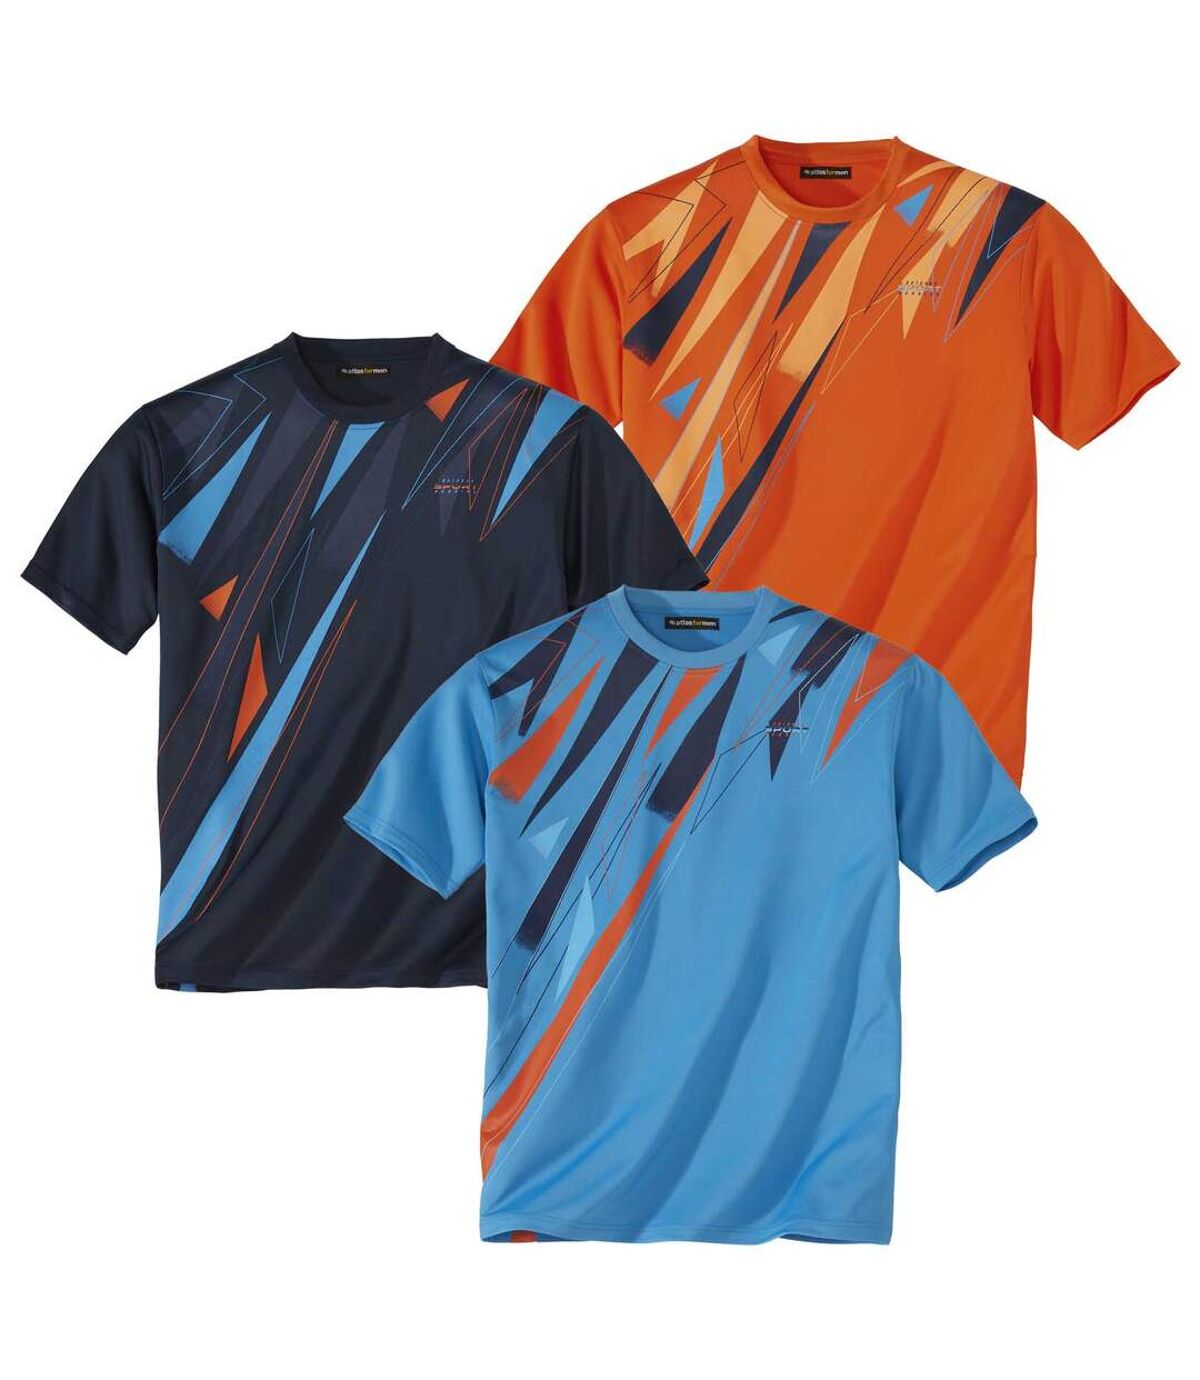 Pack of 3 Men's Sporty T-Shirts - Navy Turquoise Orange Atlas For Men